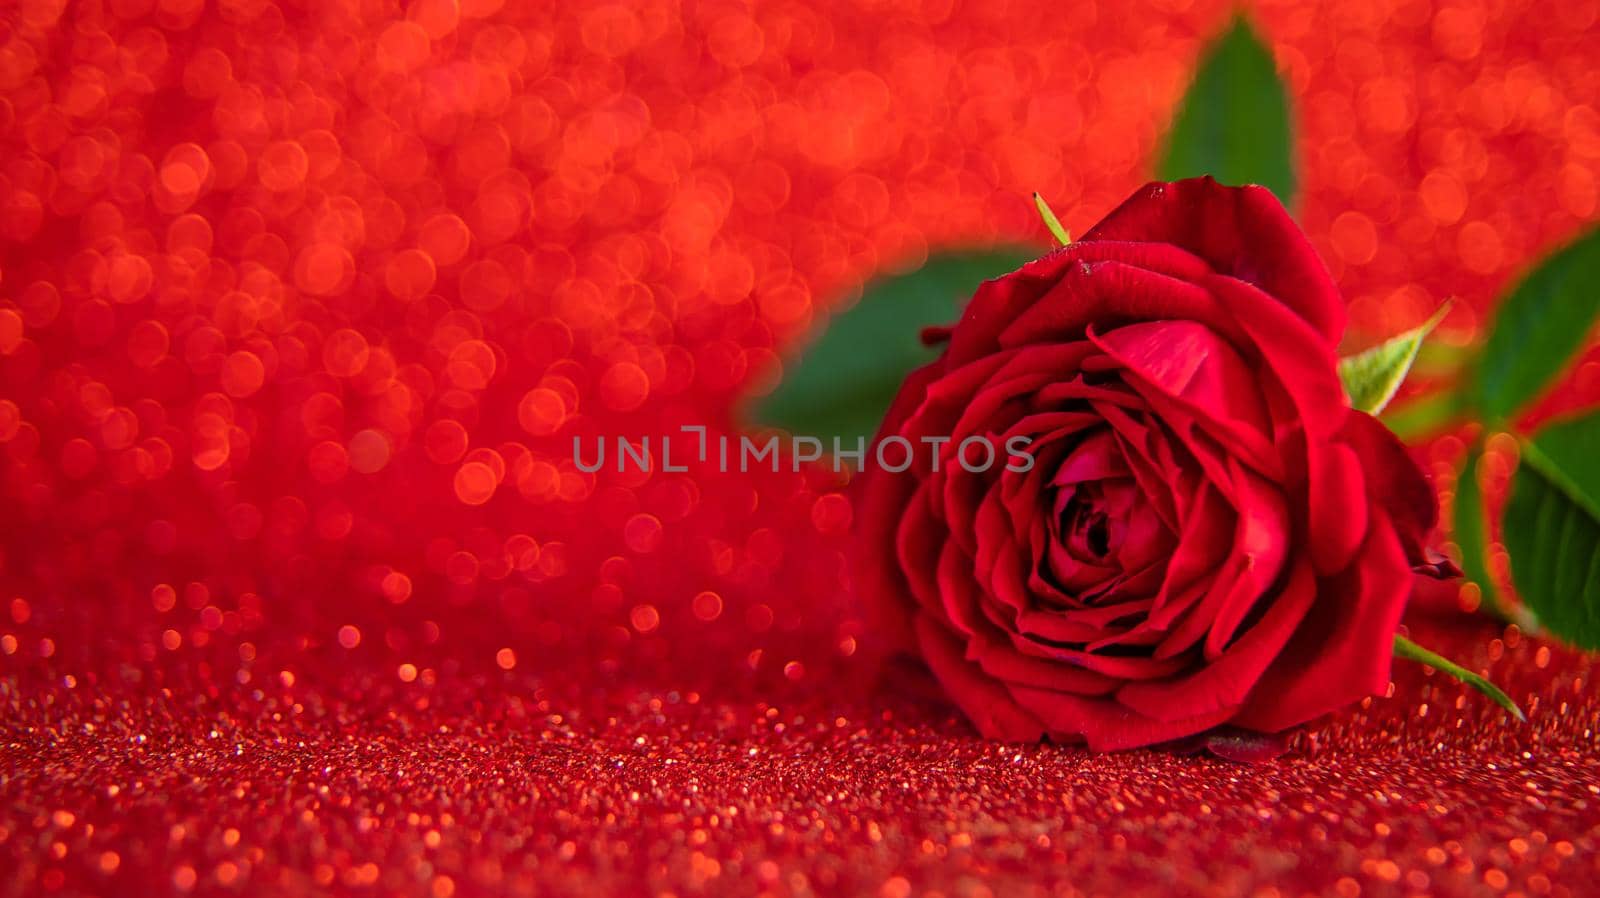 Rose on a shiny background. Selective focus. by yanadjana